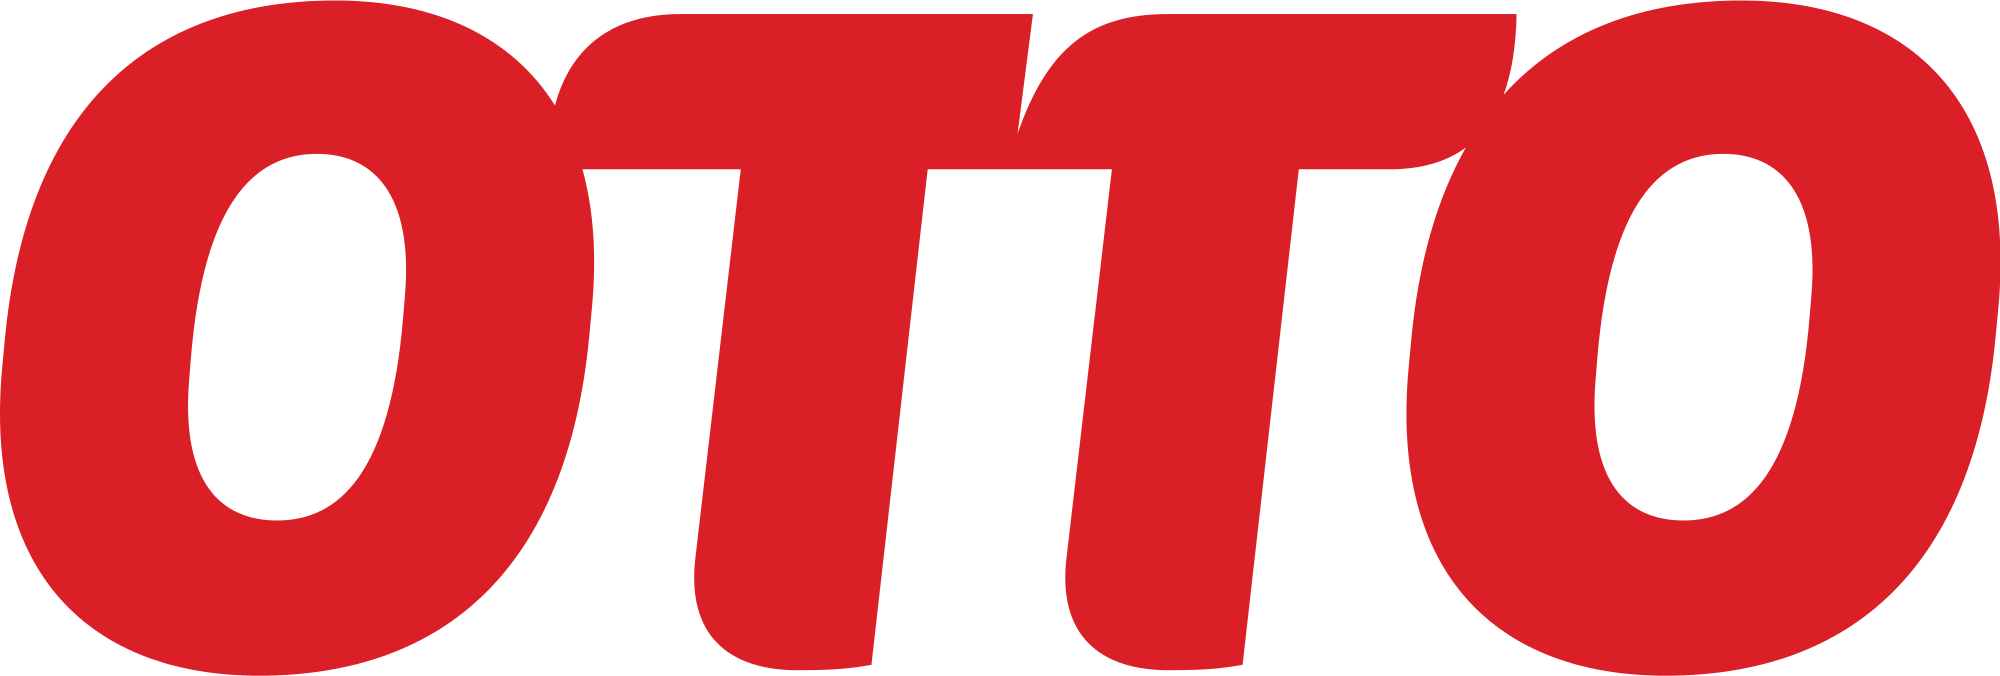 Otto GmbH logo